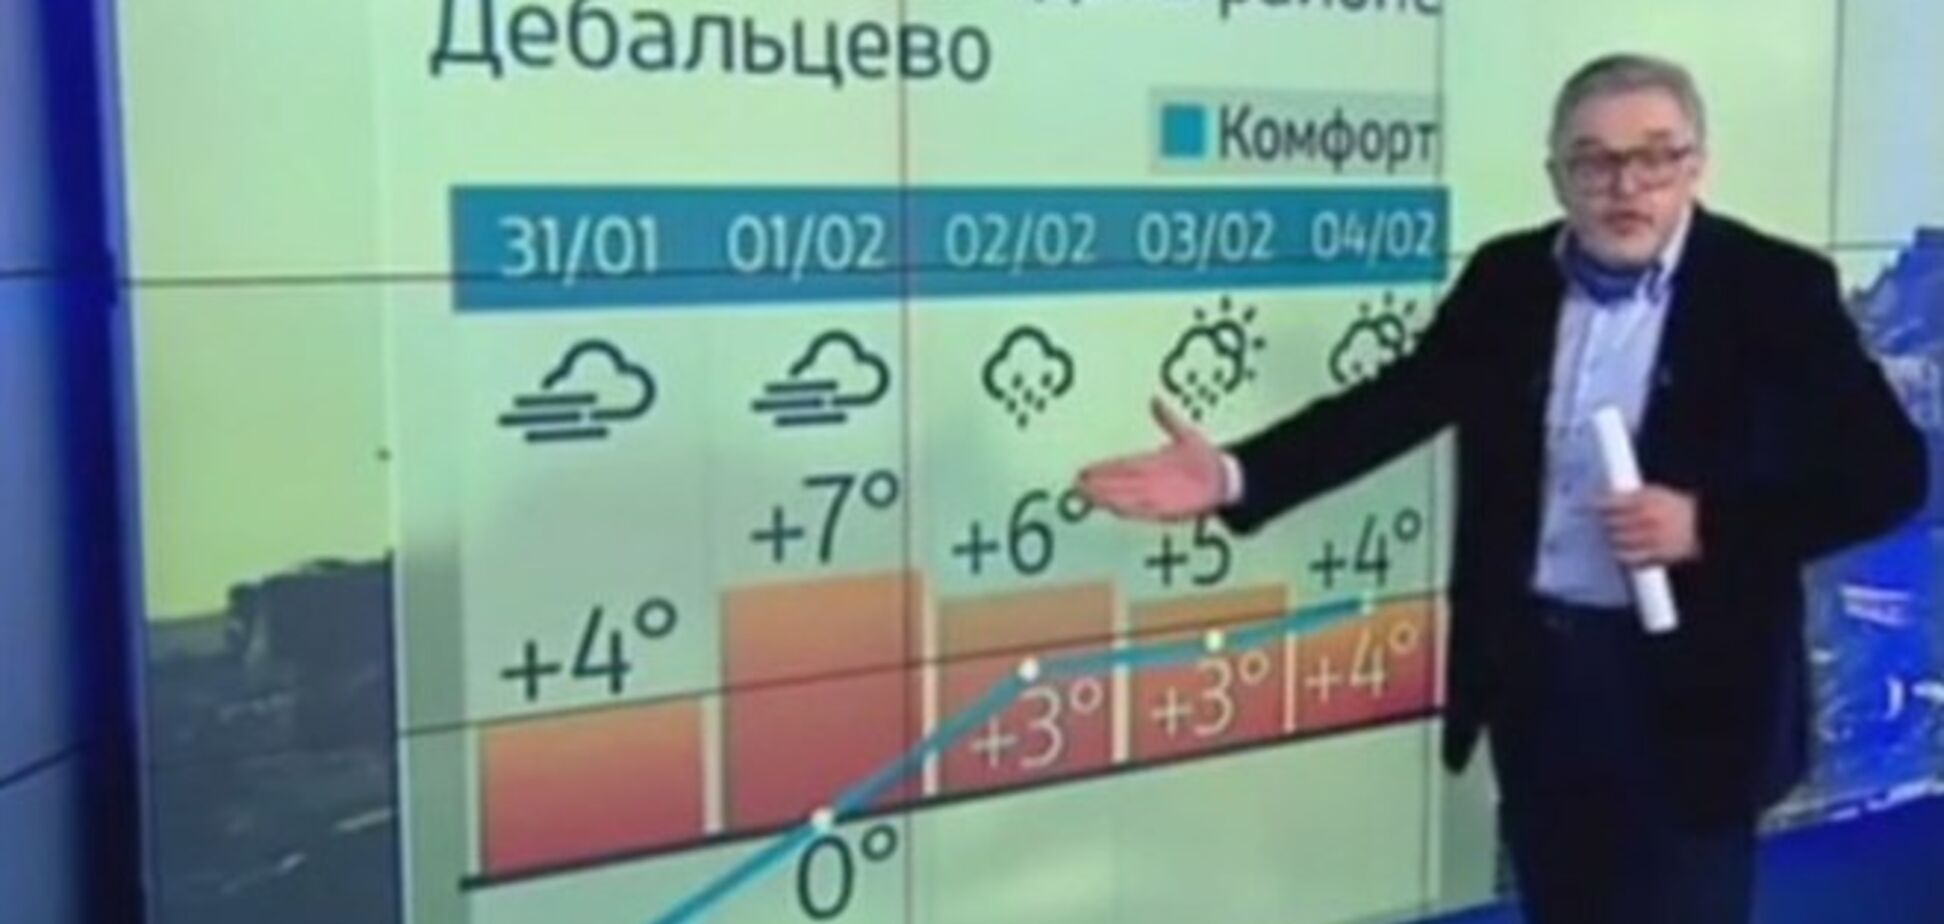 Крайняя точка маразма: на российском ТВ вышел прогноз погоды в зоне боевых действий под Дебальцево